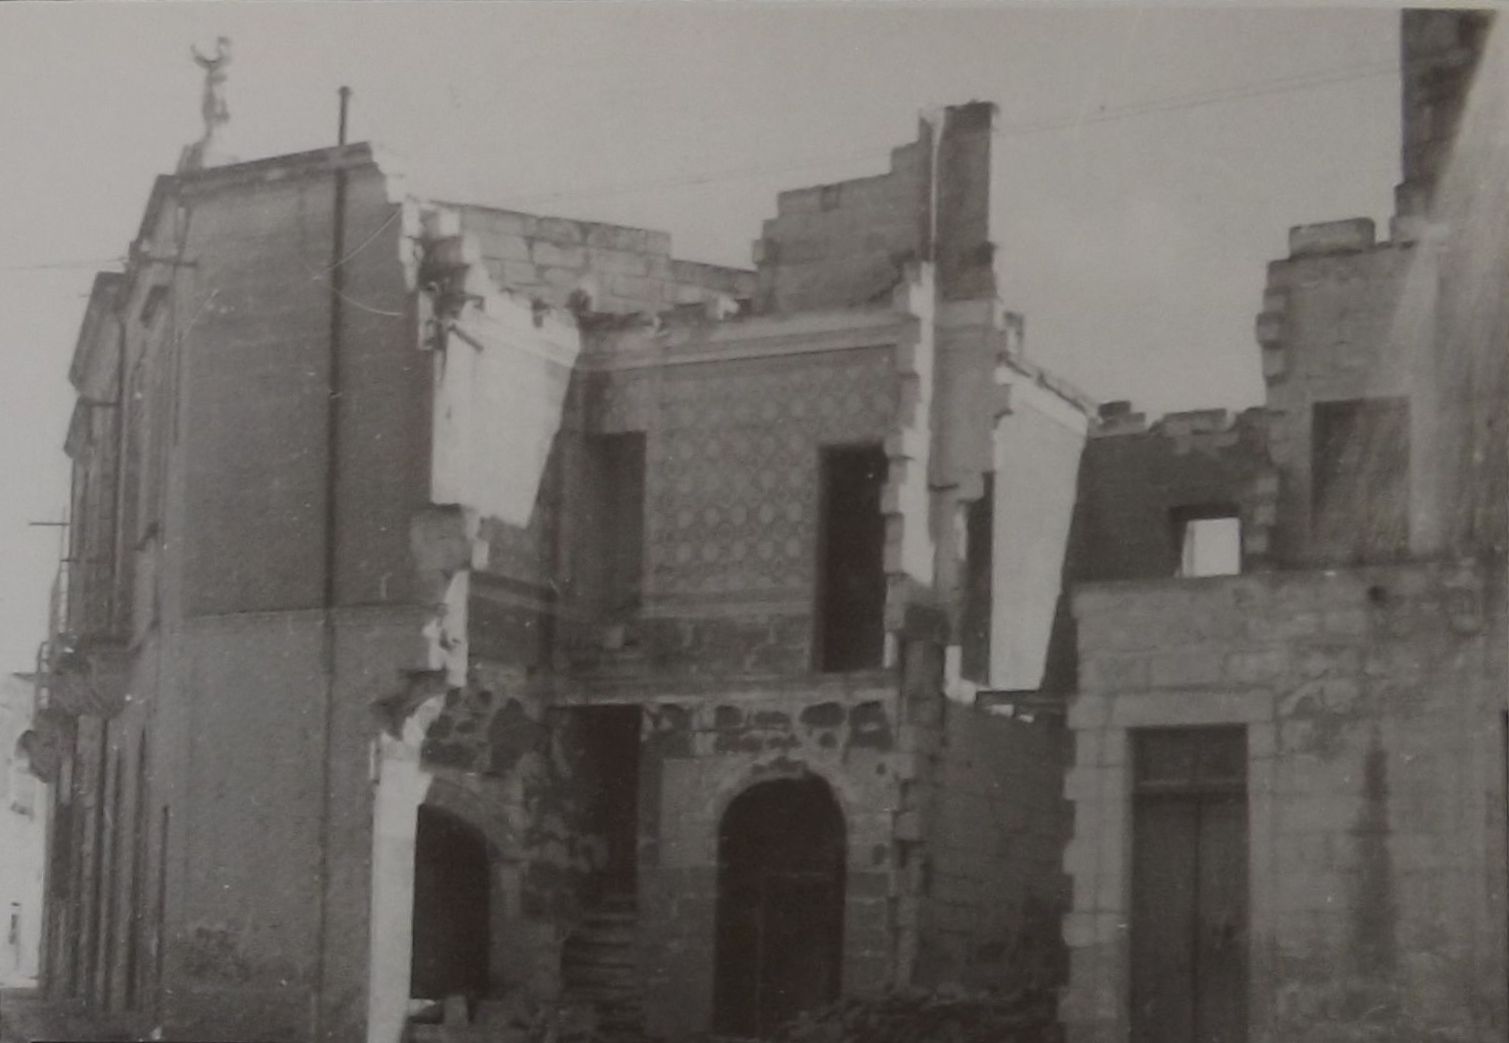 Demolished buildings in Bridge Street Nos. 140-143